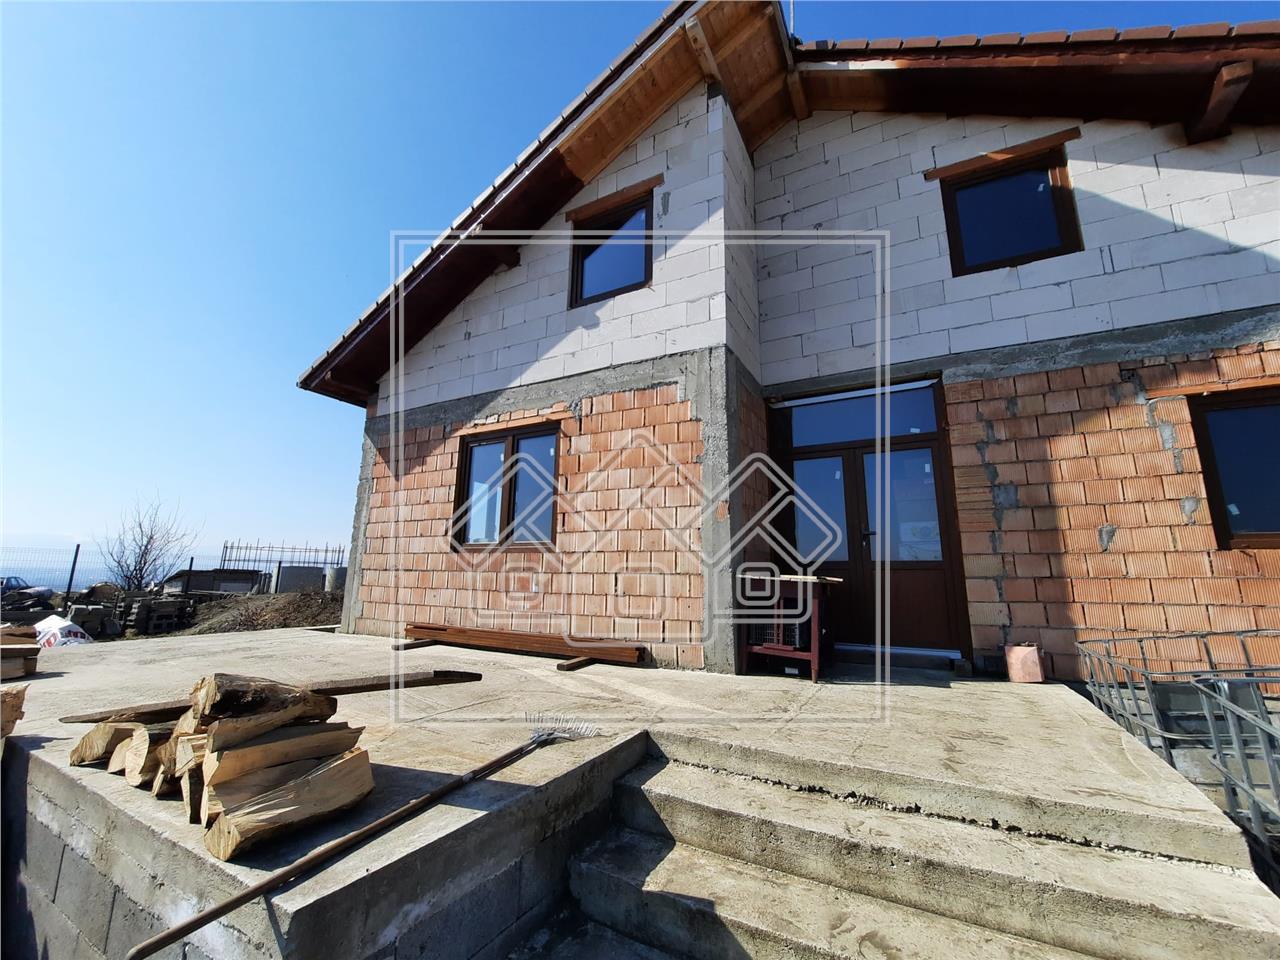 Casa de vanzare in Sibiu - 230 mp utili + teren - Dealul Sibiului